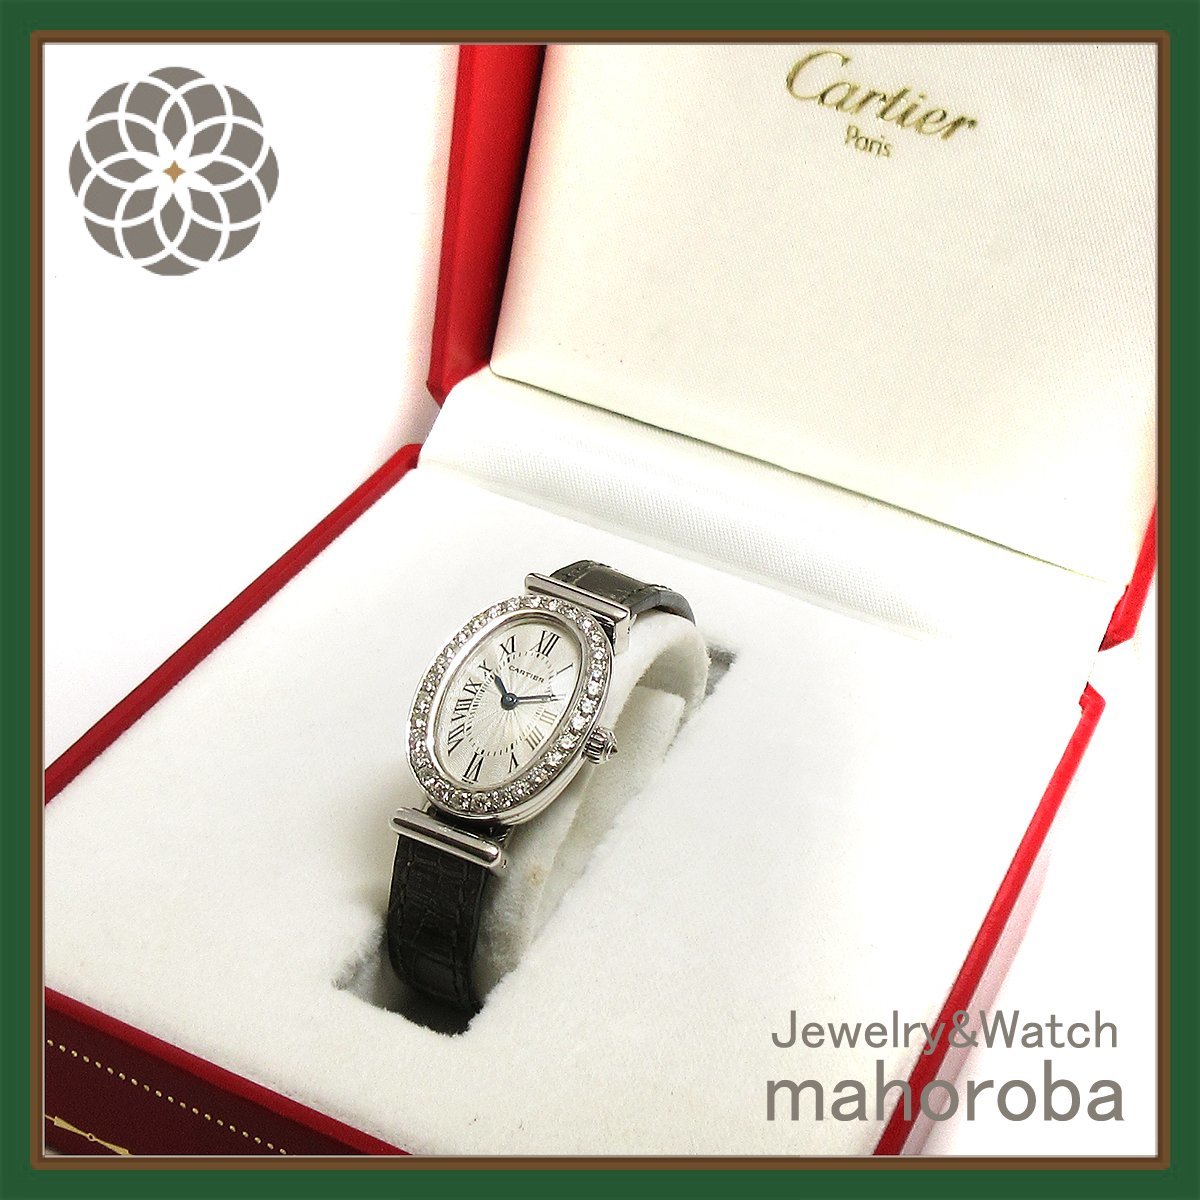  редкий модель * оплата в рассрочку возможно * прекрасный товар *Cartier Cartier Baignoire B модель 750WG бриллиантовая оправа в одном корпусе пряжка часы 